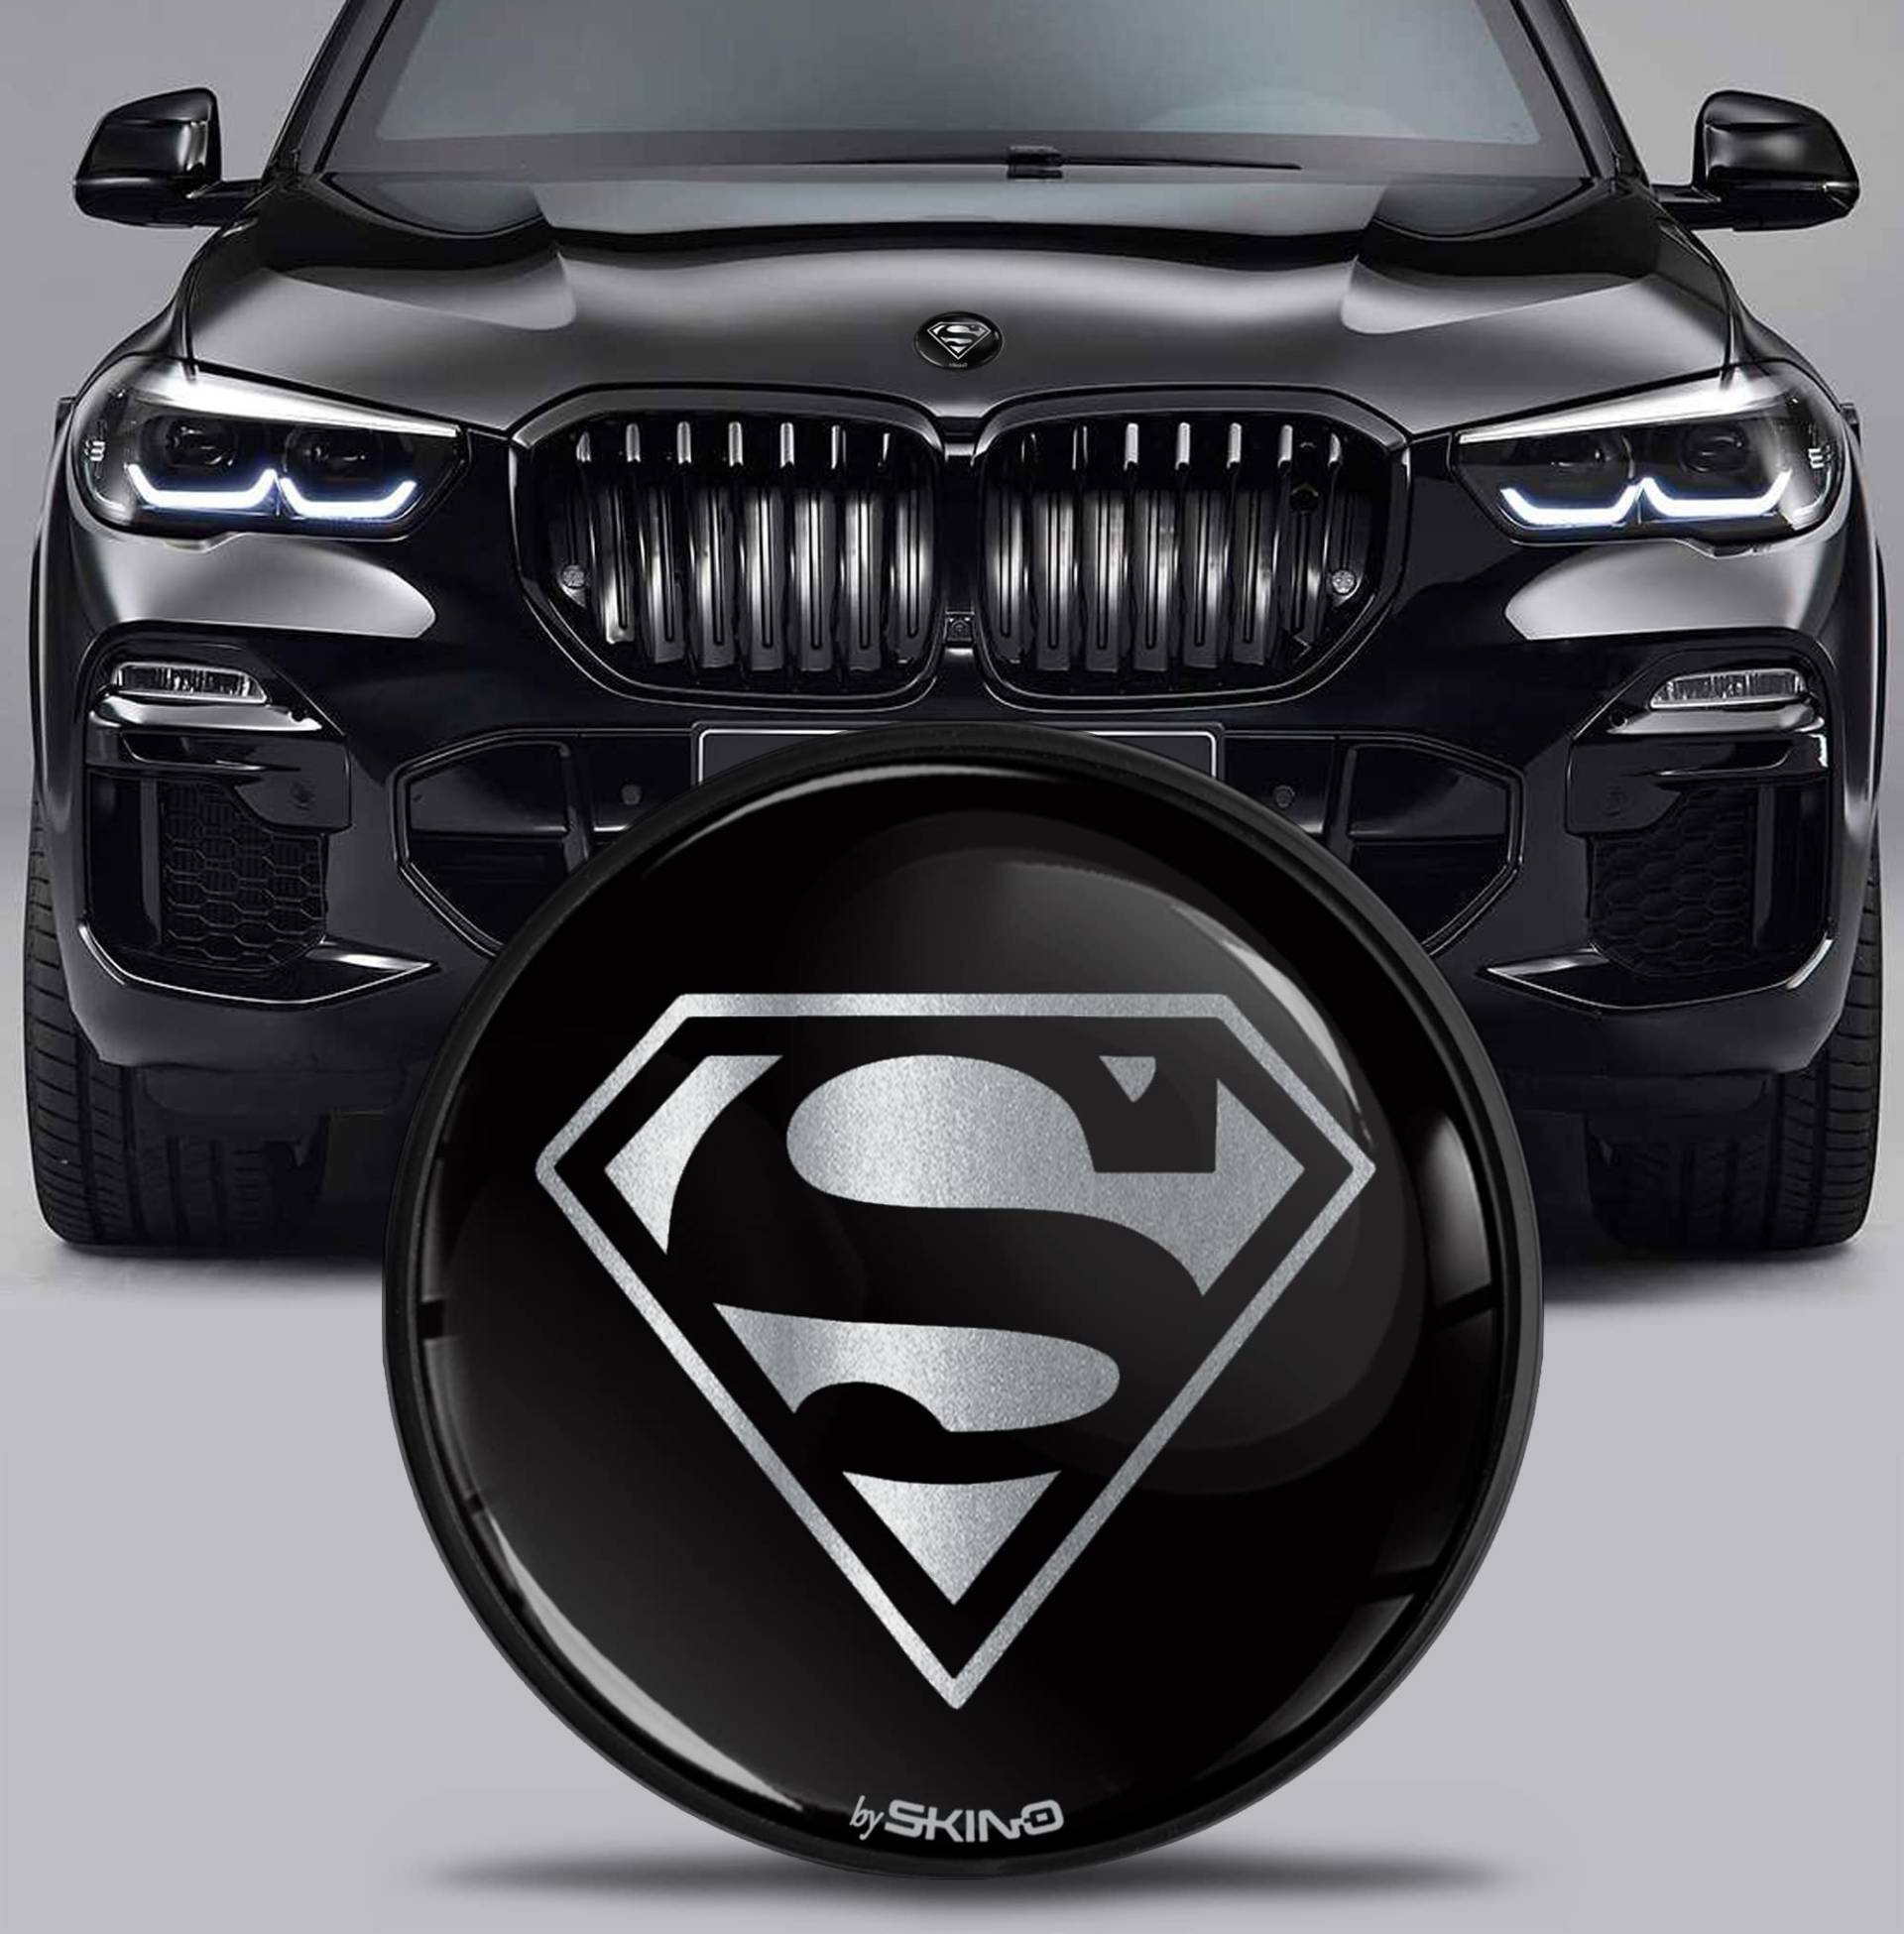 SkinoEu Kompatibel mit BMW Emblem Plakette 51767288752 82mm Durchmesser für Motorhaube/Kofferraum 1er 2er 3er 4er 5er 7er 8er X1 X2 X3 X4 X5 X6 X7 Silber Schwarz EX 12 von SkinoEu